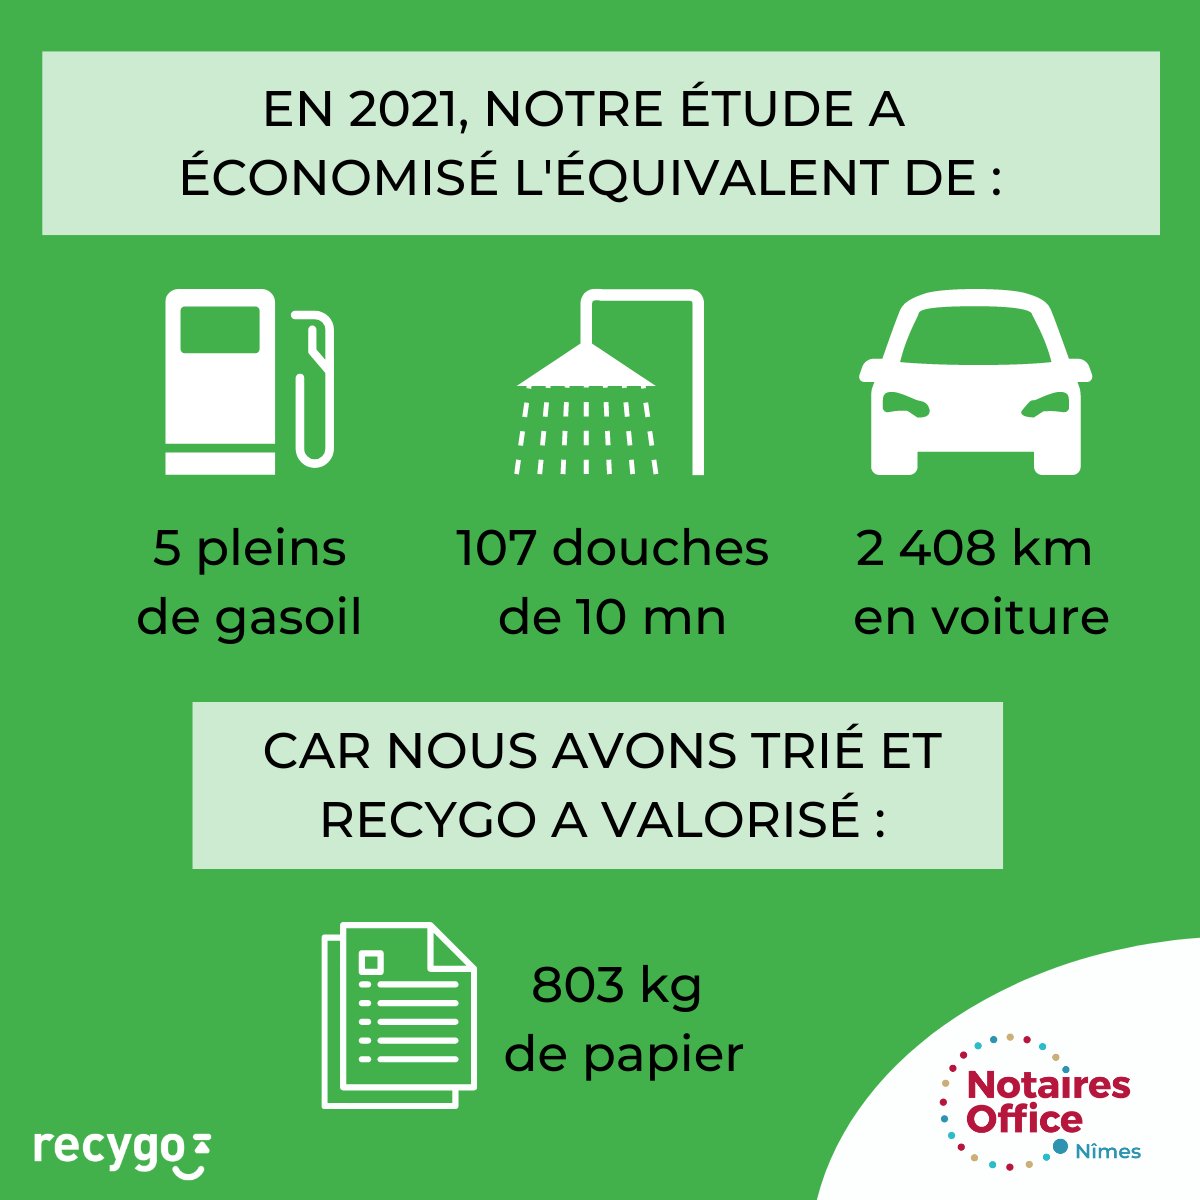 Voici notre bilan de performance du tri en 2021, avec un impact positif pour l'#environnement ! 🌱 Merci à l'ensemble des #collaboratrices de jouer le jeu au quotidien pour la planète ! 🌍 Et merci à notre partenaire @recygo 👍 #recyclage #papier #RSE